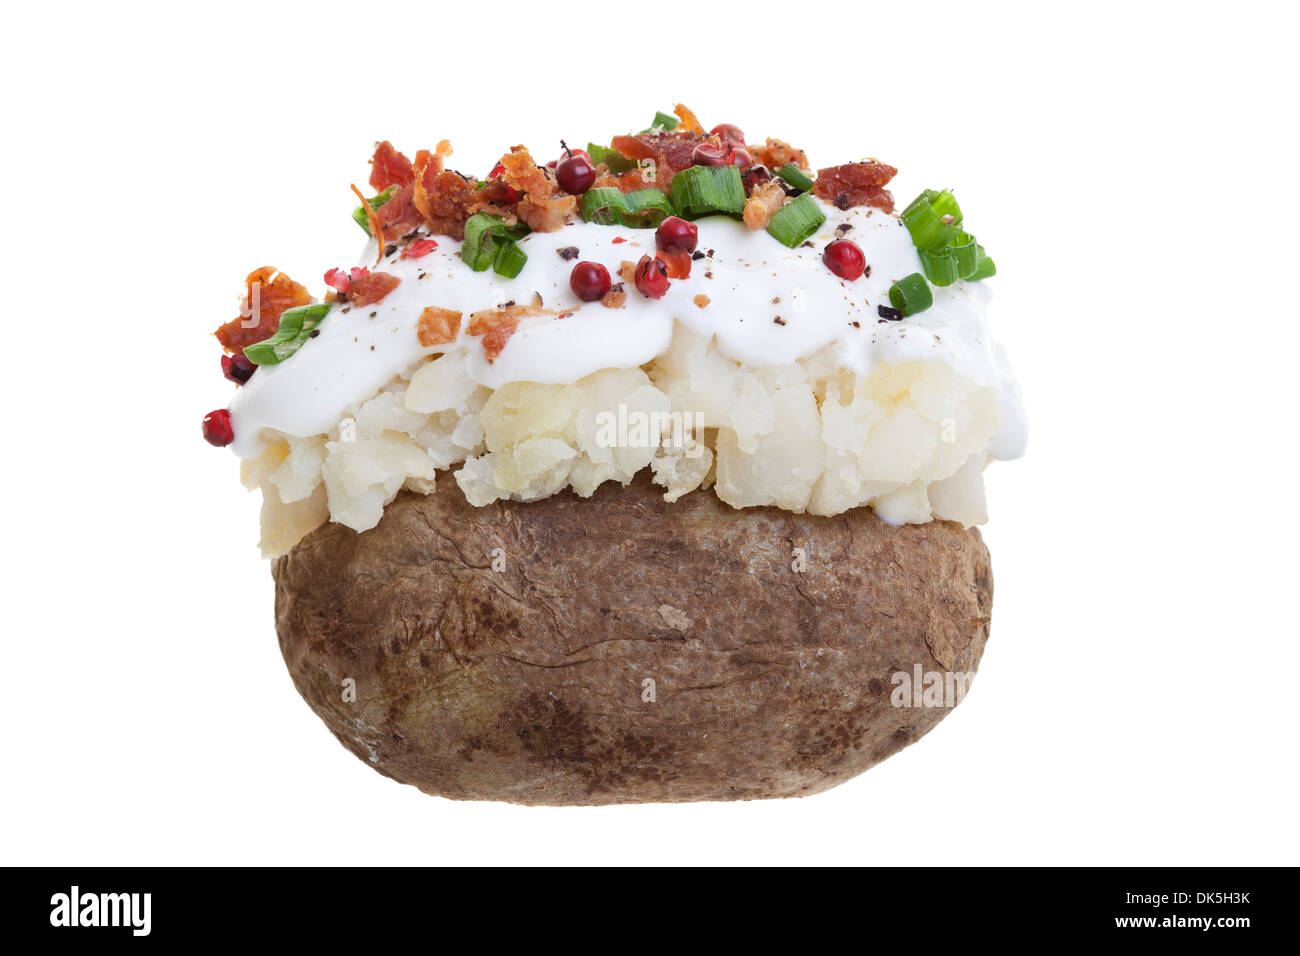 Eine gefüllte Ofenkartoffel mit Sauerrahm, Speck und Frühlingszwiebeln. Geschossen Sie auf einem weißen Hintergrund. Stockfoto